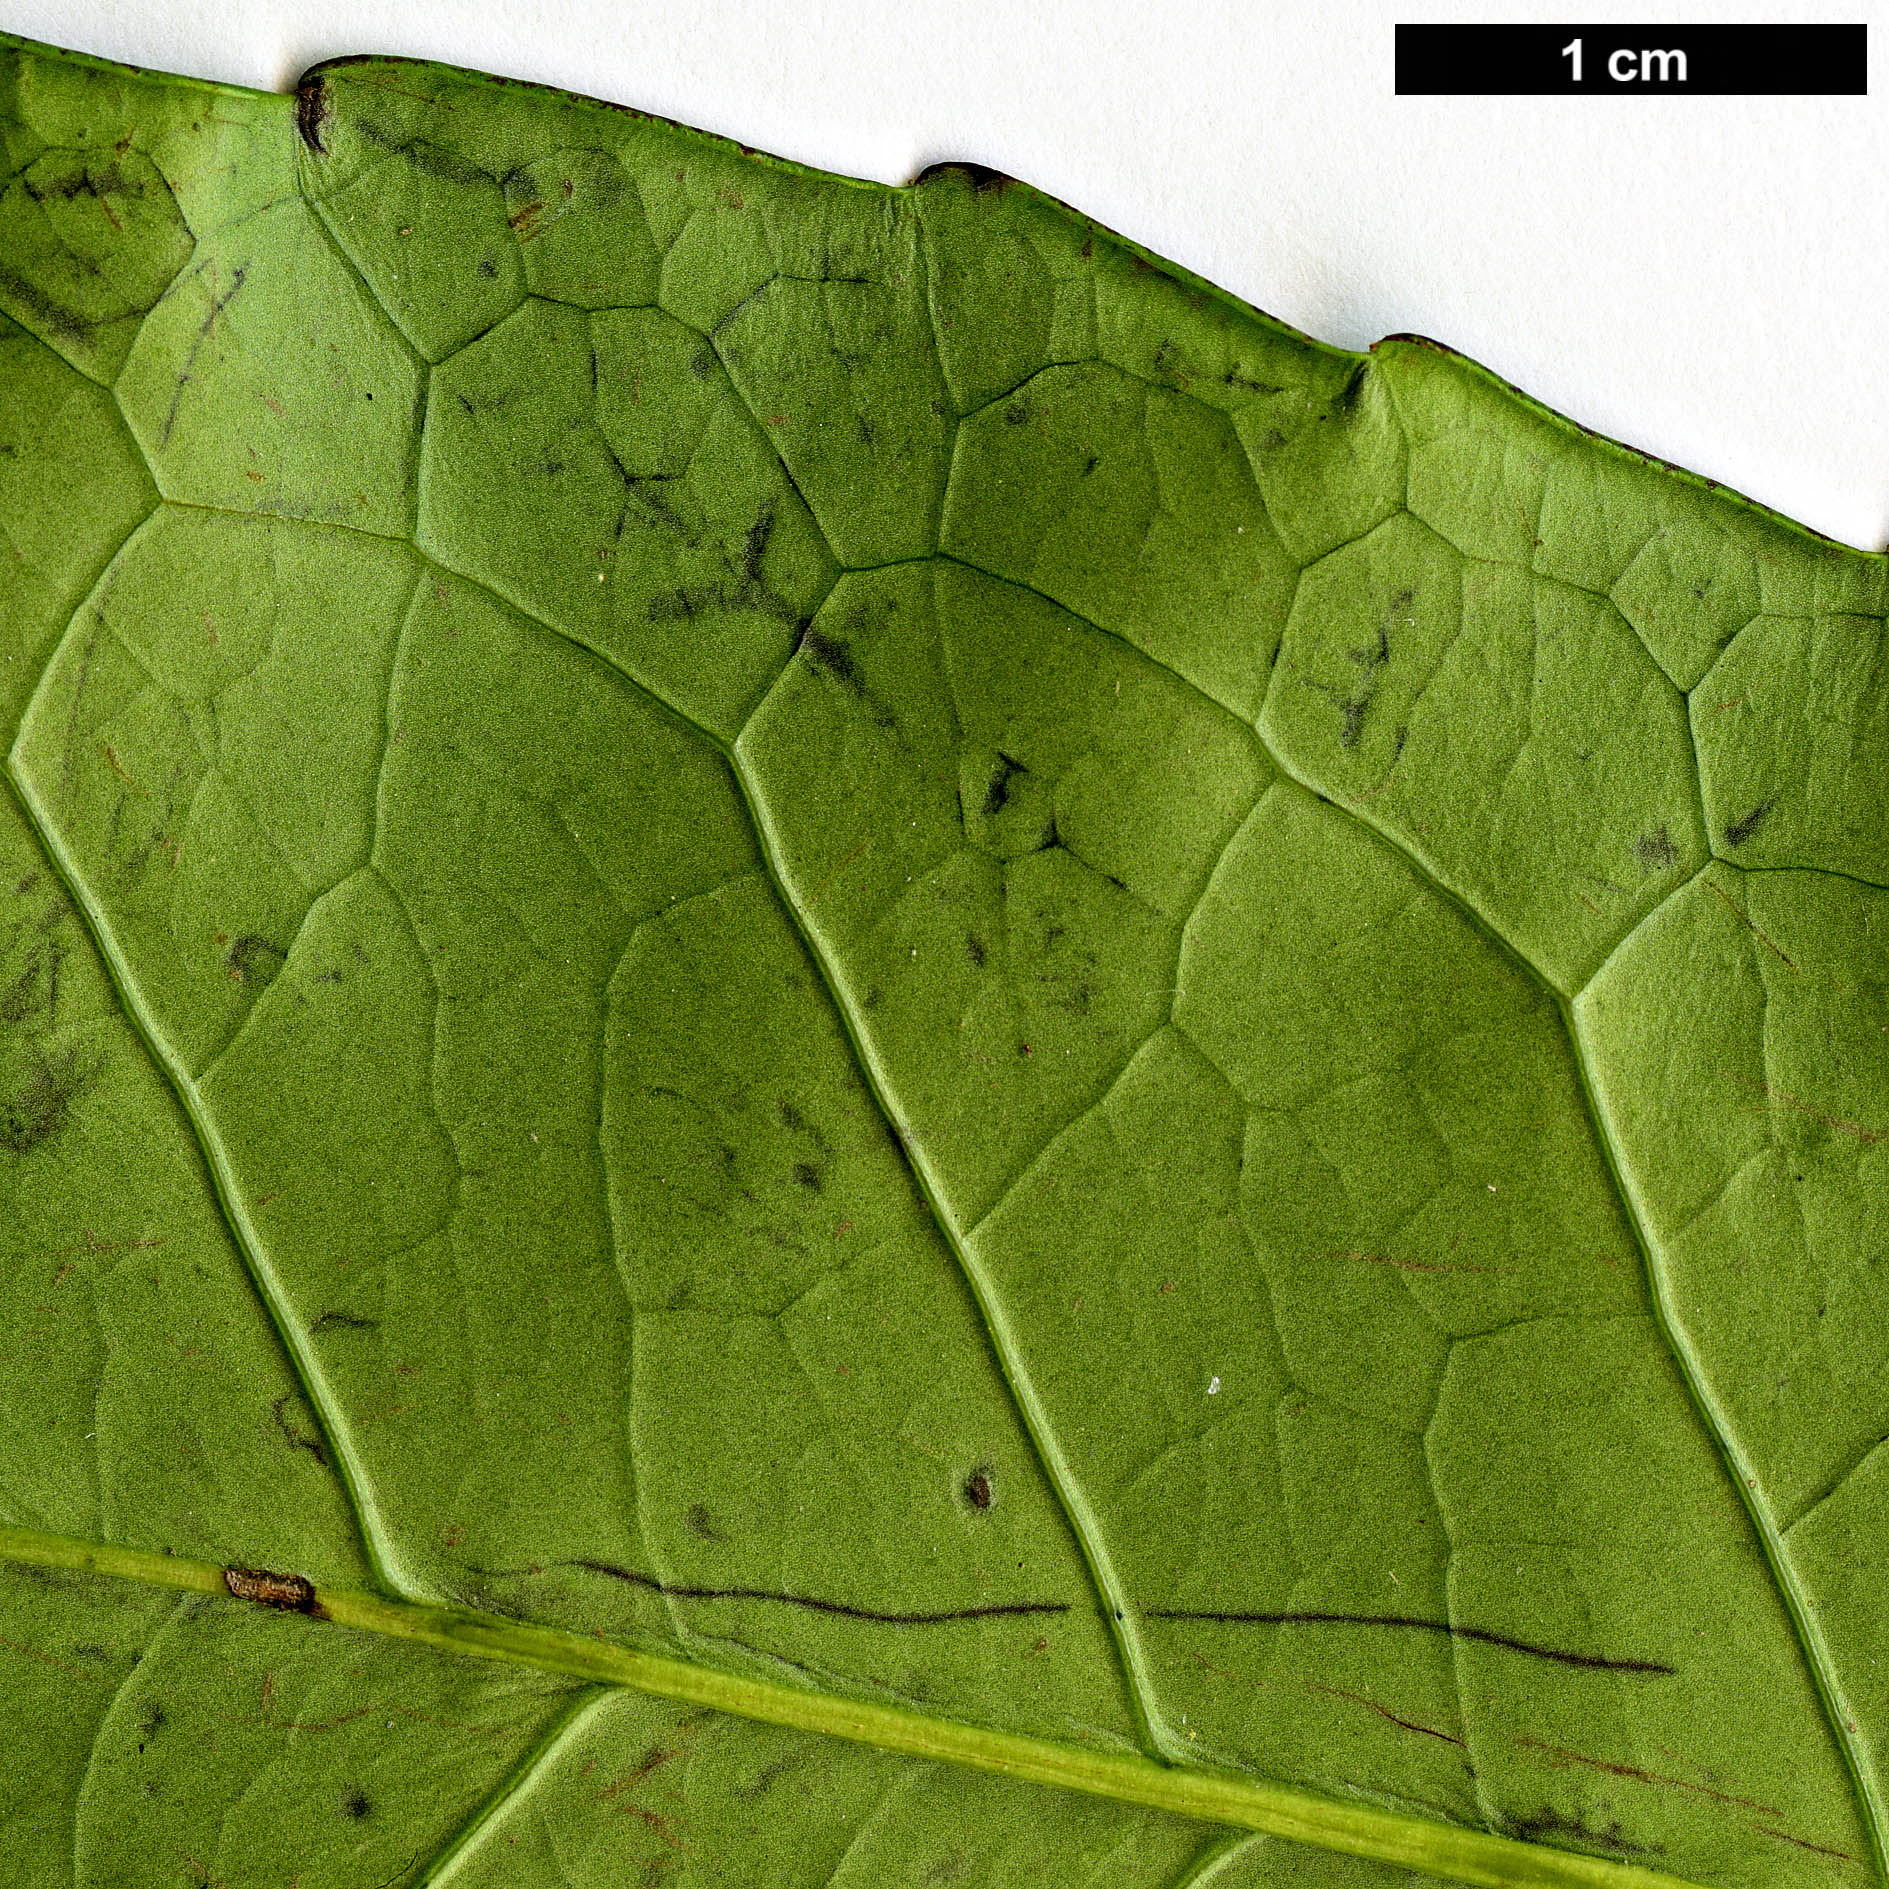 High resolution image: Family: Aquifoliaceae - Genus: Ilex - Taxon: paraguariensis